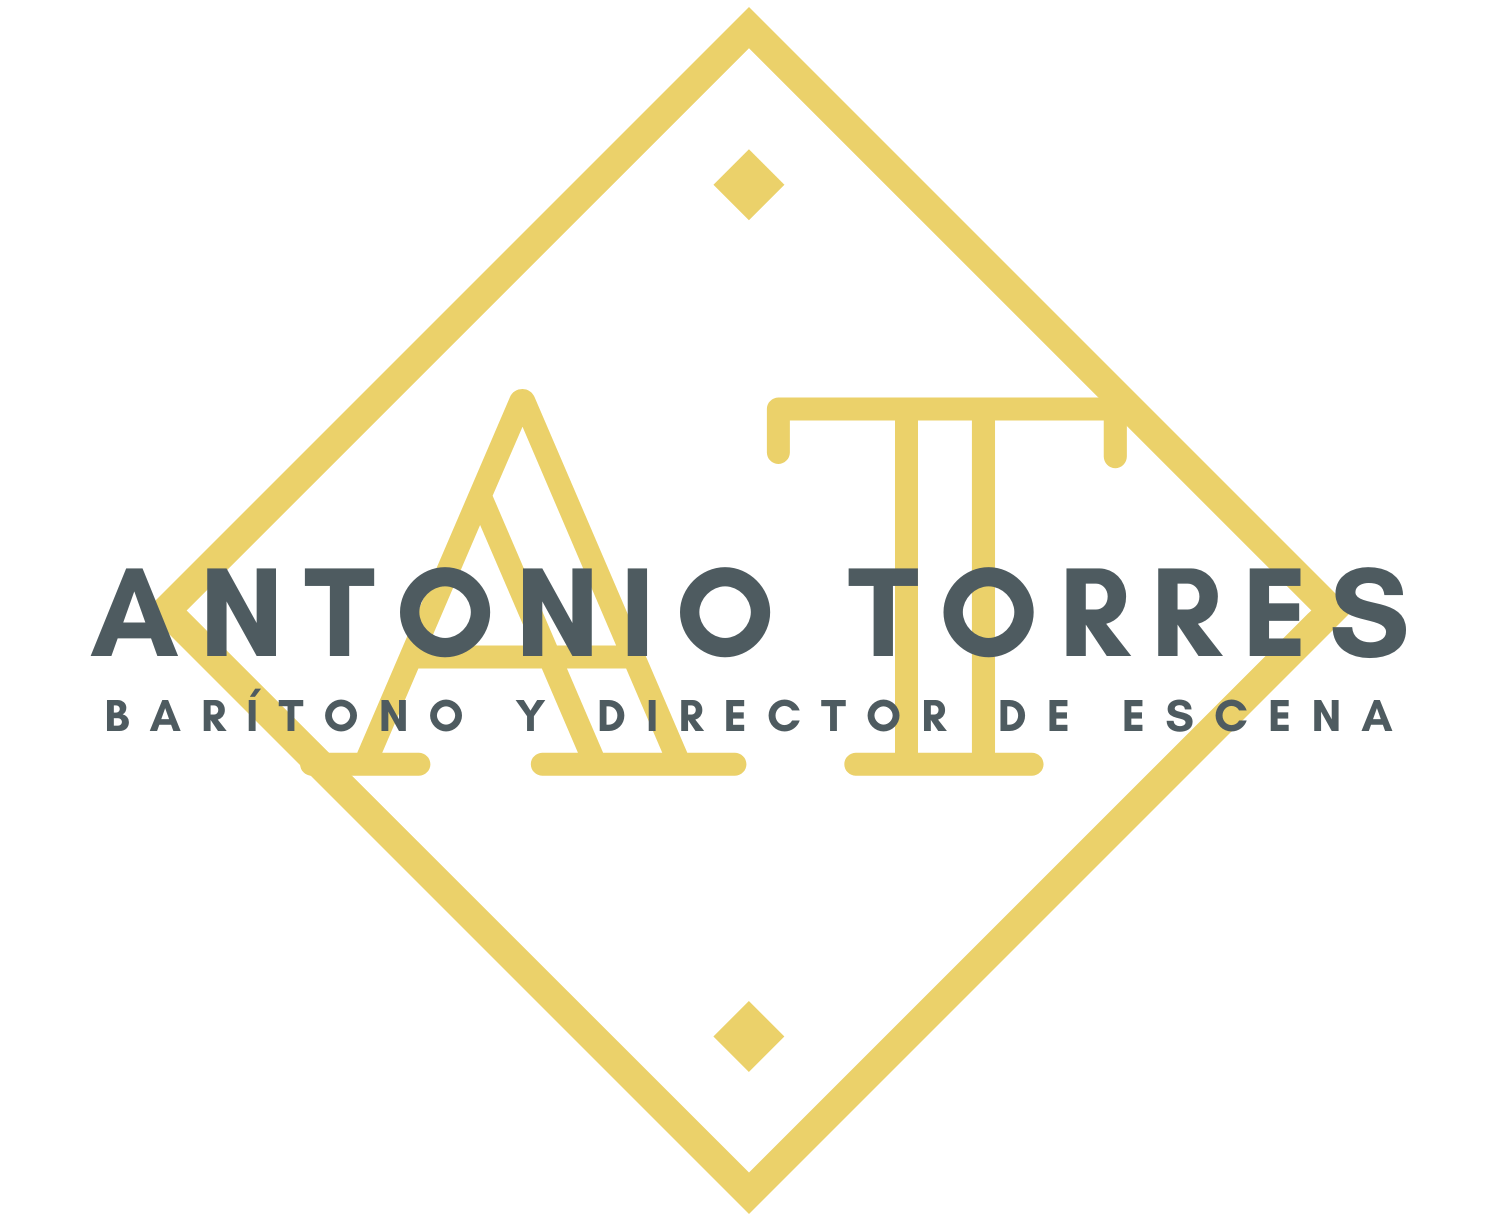 Antonio Torres.                                                          Barítono y Director de Escena